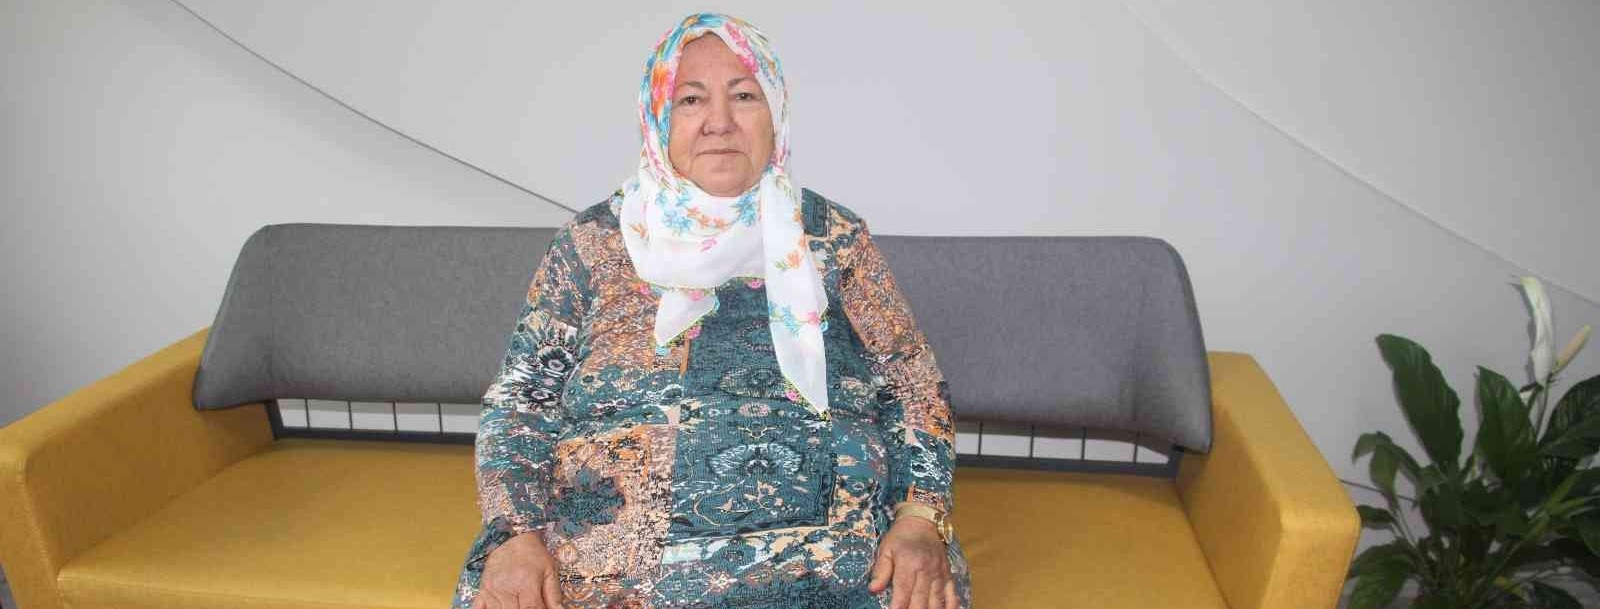 71 yaşında 136 kiloya ulaşmıştı sağlığına Elazığ’da kavuştu